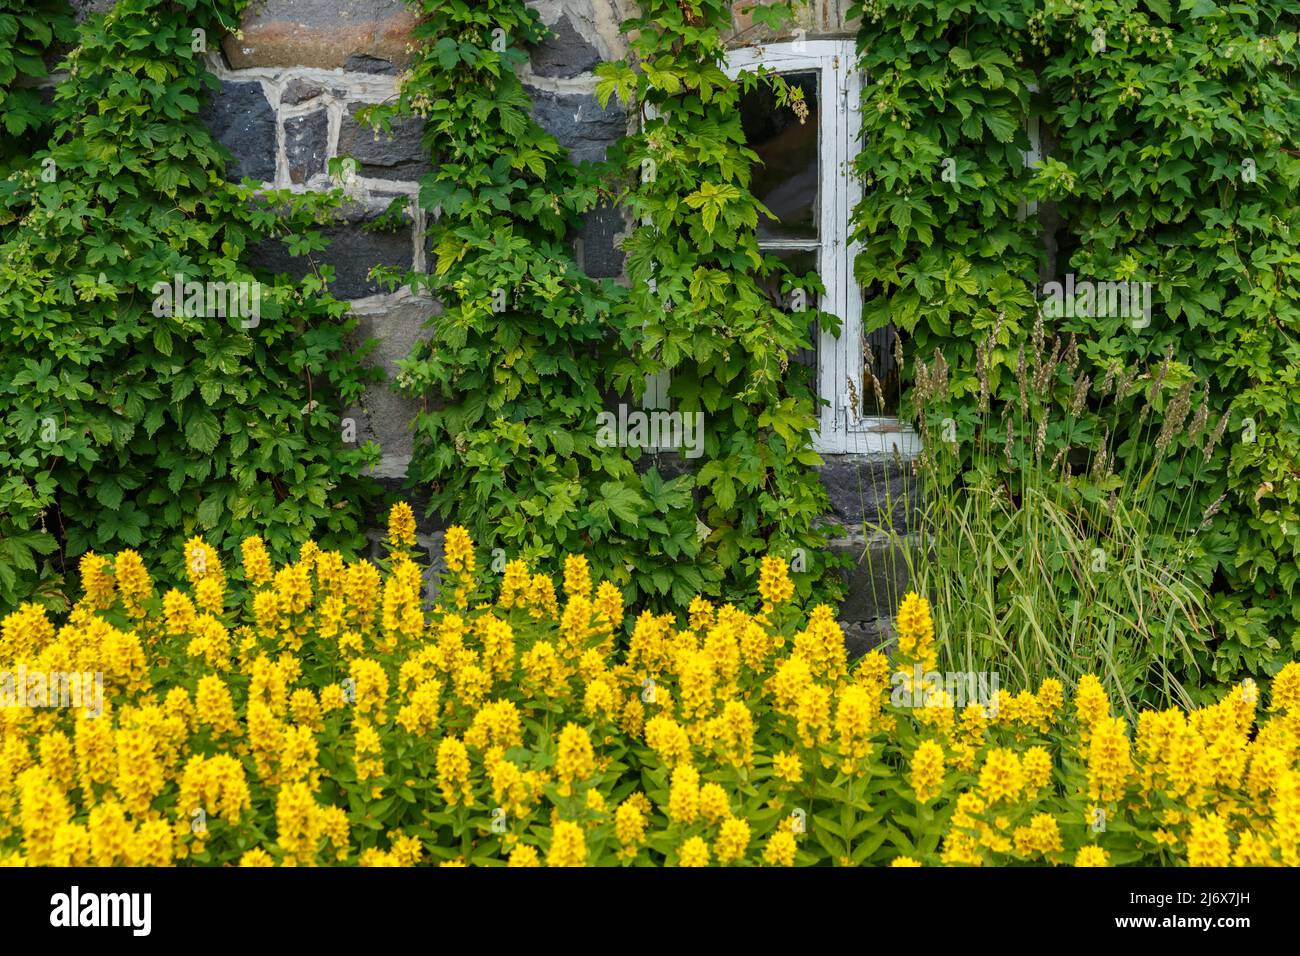 La façade de la maison est immergée dans la verdure et les fleurs jaunes, les fenêtres blanches de la maison, la scène rurale Banque D'Images